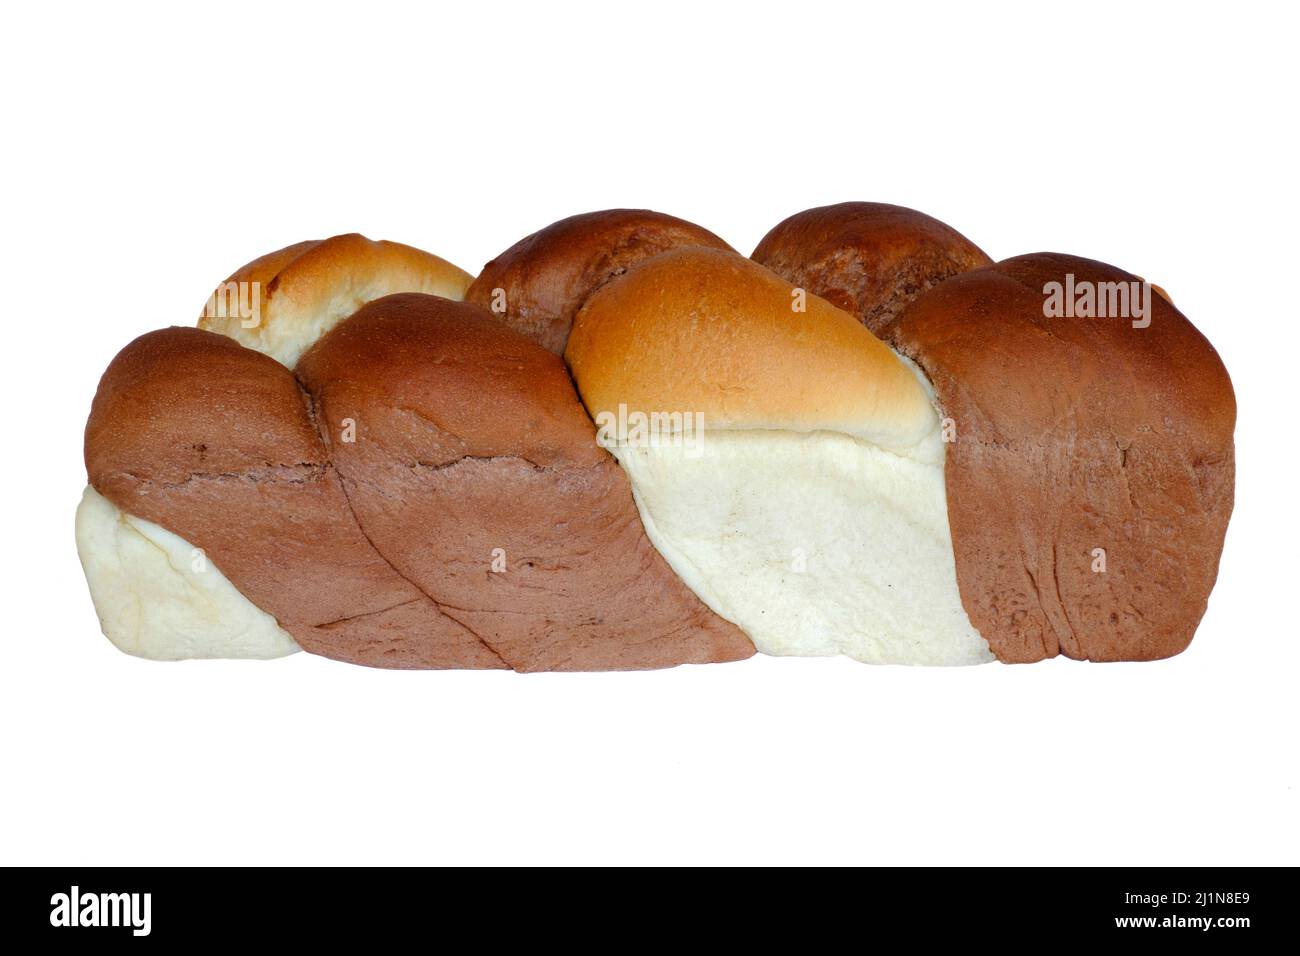 traditionnel hongrois fonott kalács doux tordus tressés pain populaire surtout à l'heure de pâques en hongrie Banque D'Images